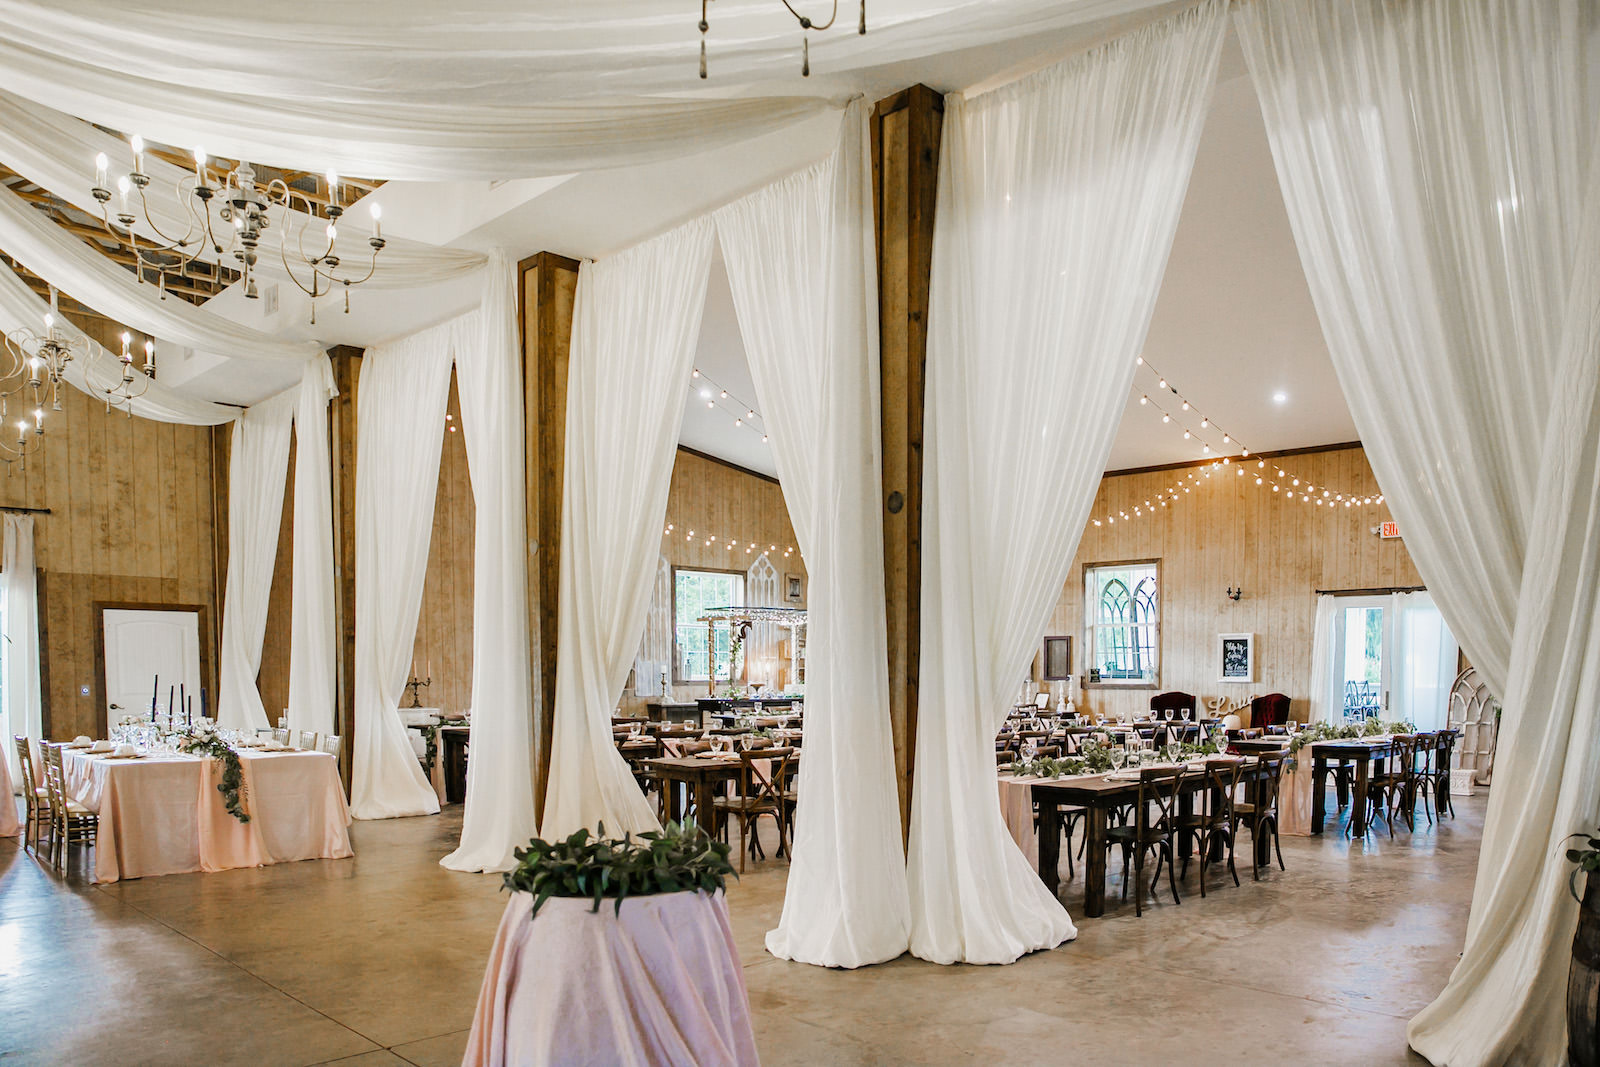 White Draping in Rustic Barn Wedding Reception | Tampa Florida Venue Covington Farms